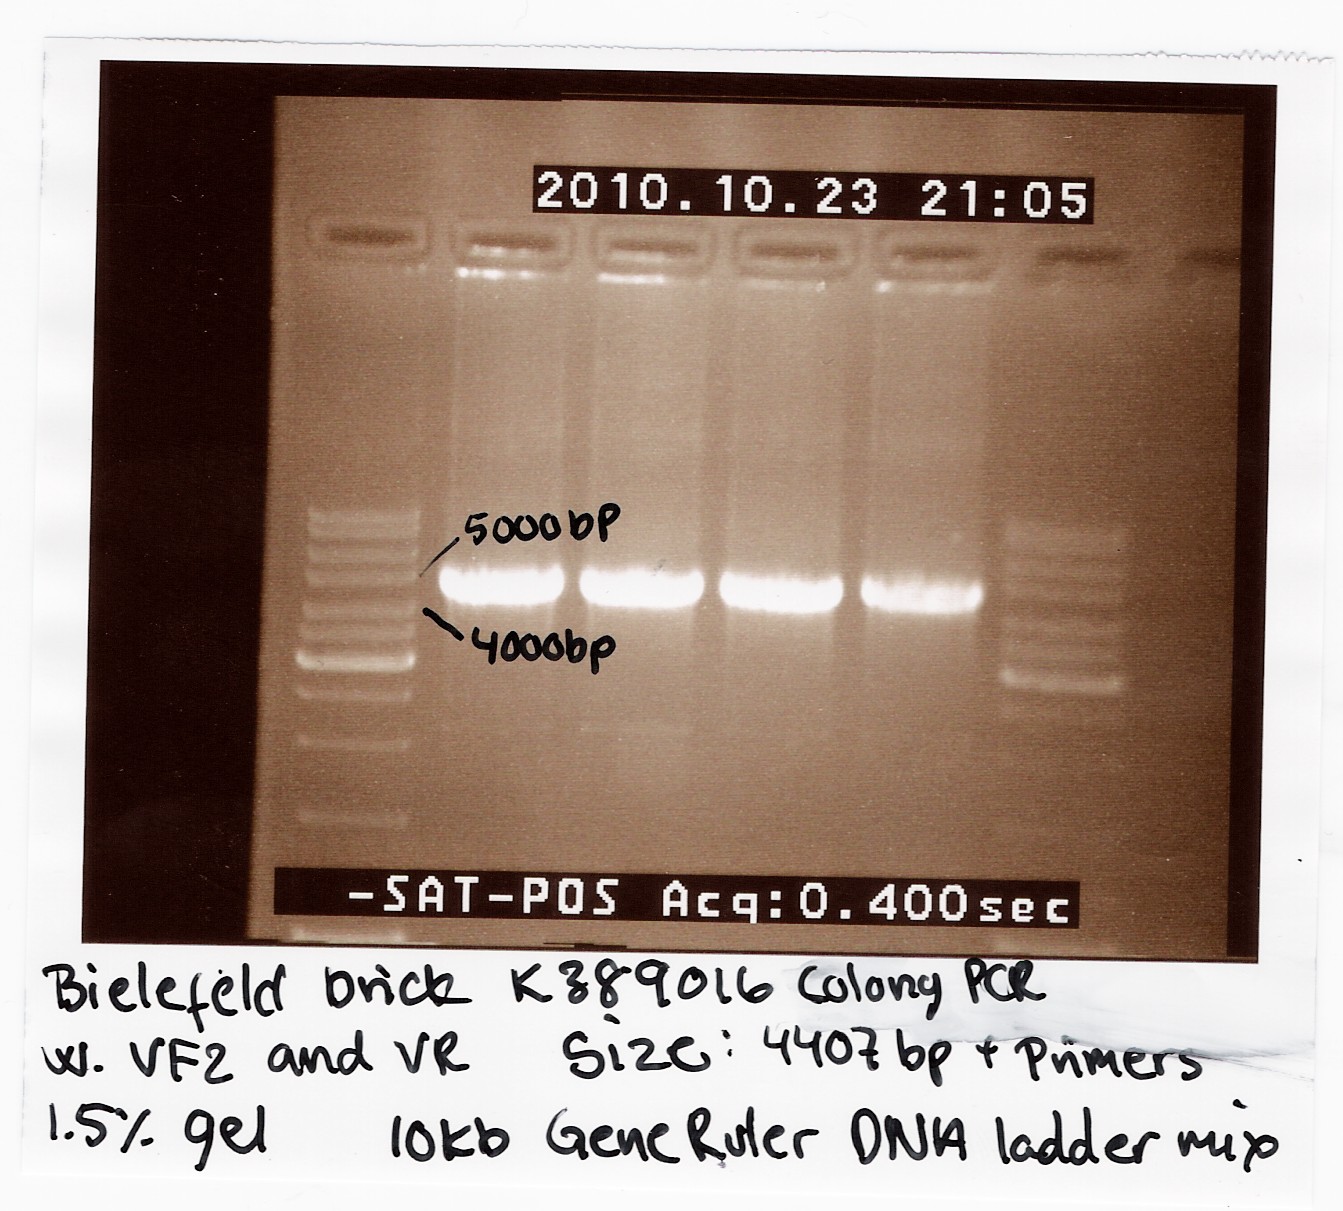 Team SDU-Denmark Bielefeld Colony PCR-1.jpg